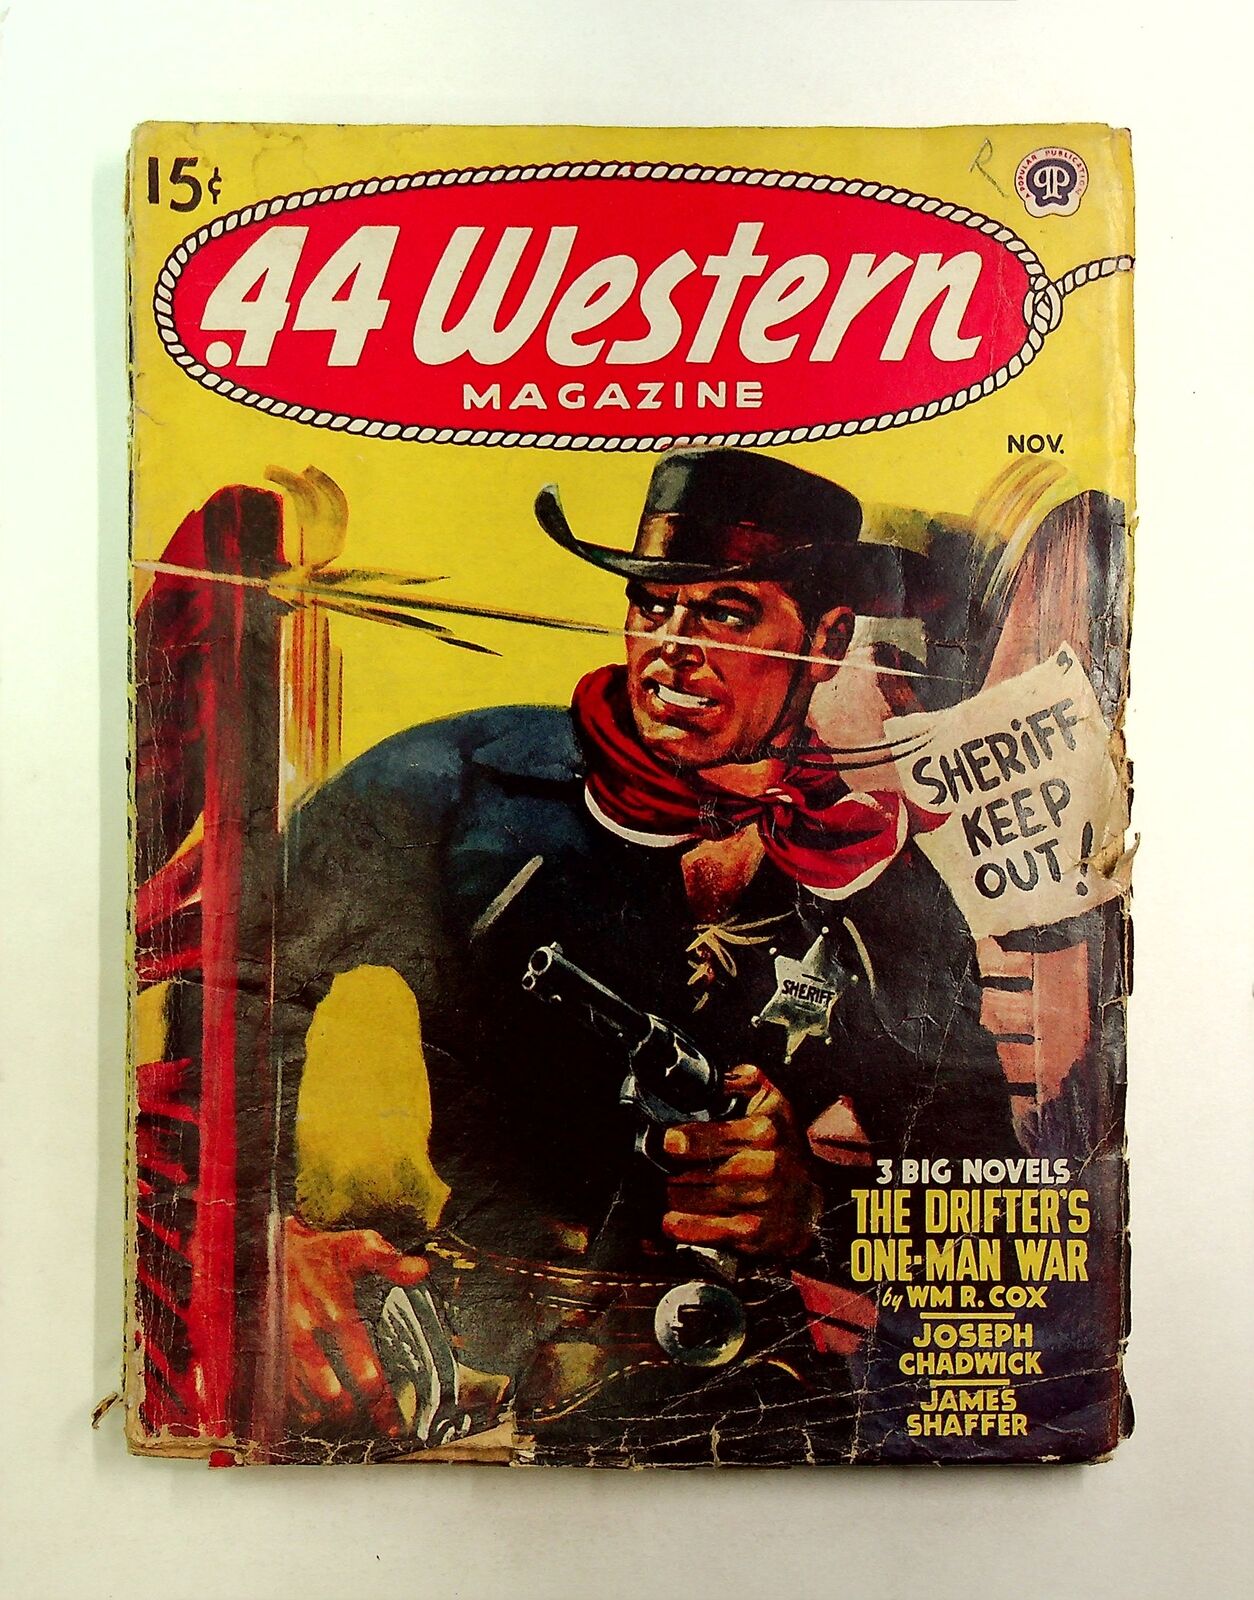 44 Western Magazine Pulp Nov 1947 Vol. 19 #1 GD Low Grade